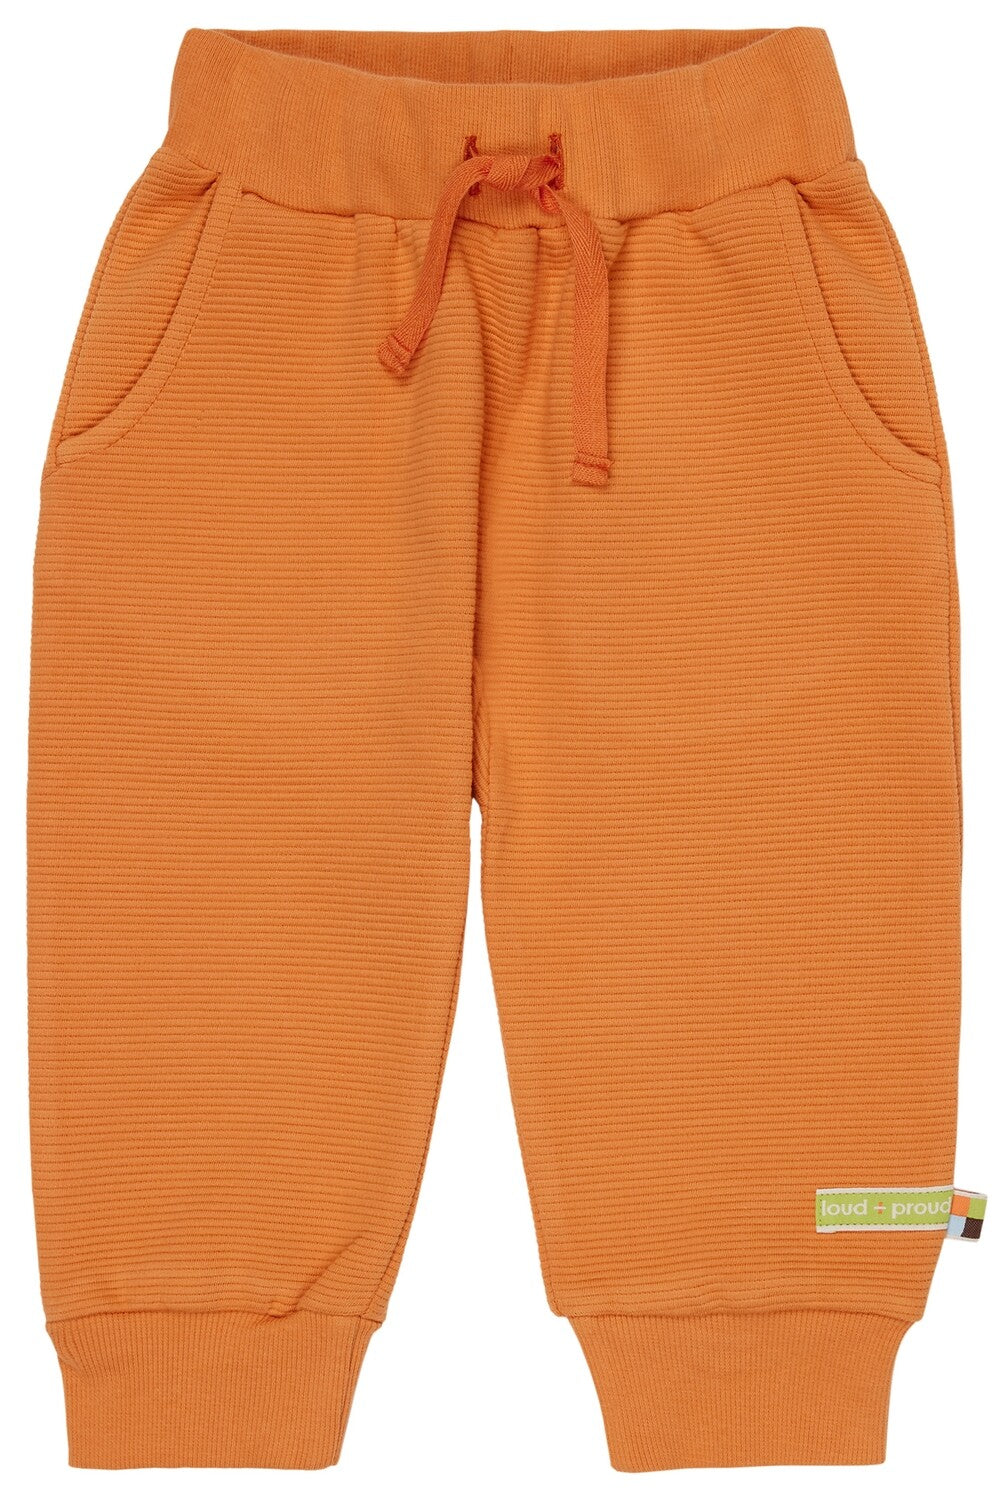 Rantuotos, judesių nevaržančios vaikiškos laisvalaikio kelnės iš švelnaus GOTS organinės medvilnės trikotažo. Orandžinės spalvos, su kišenėmis.